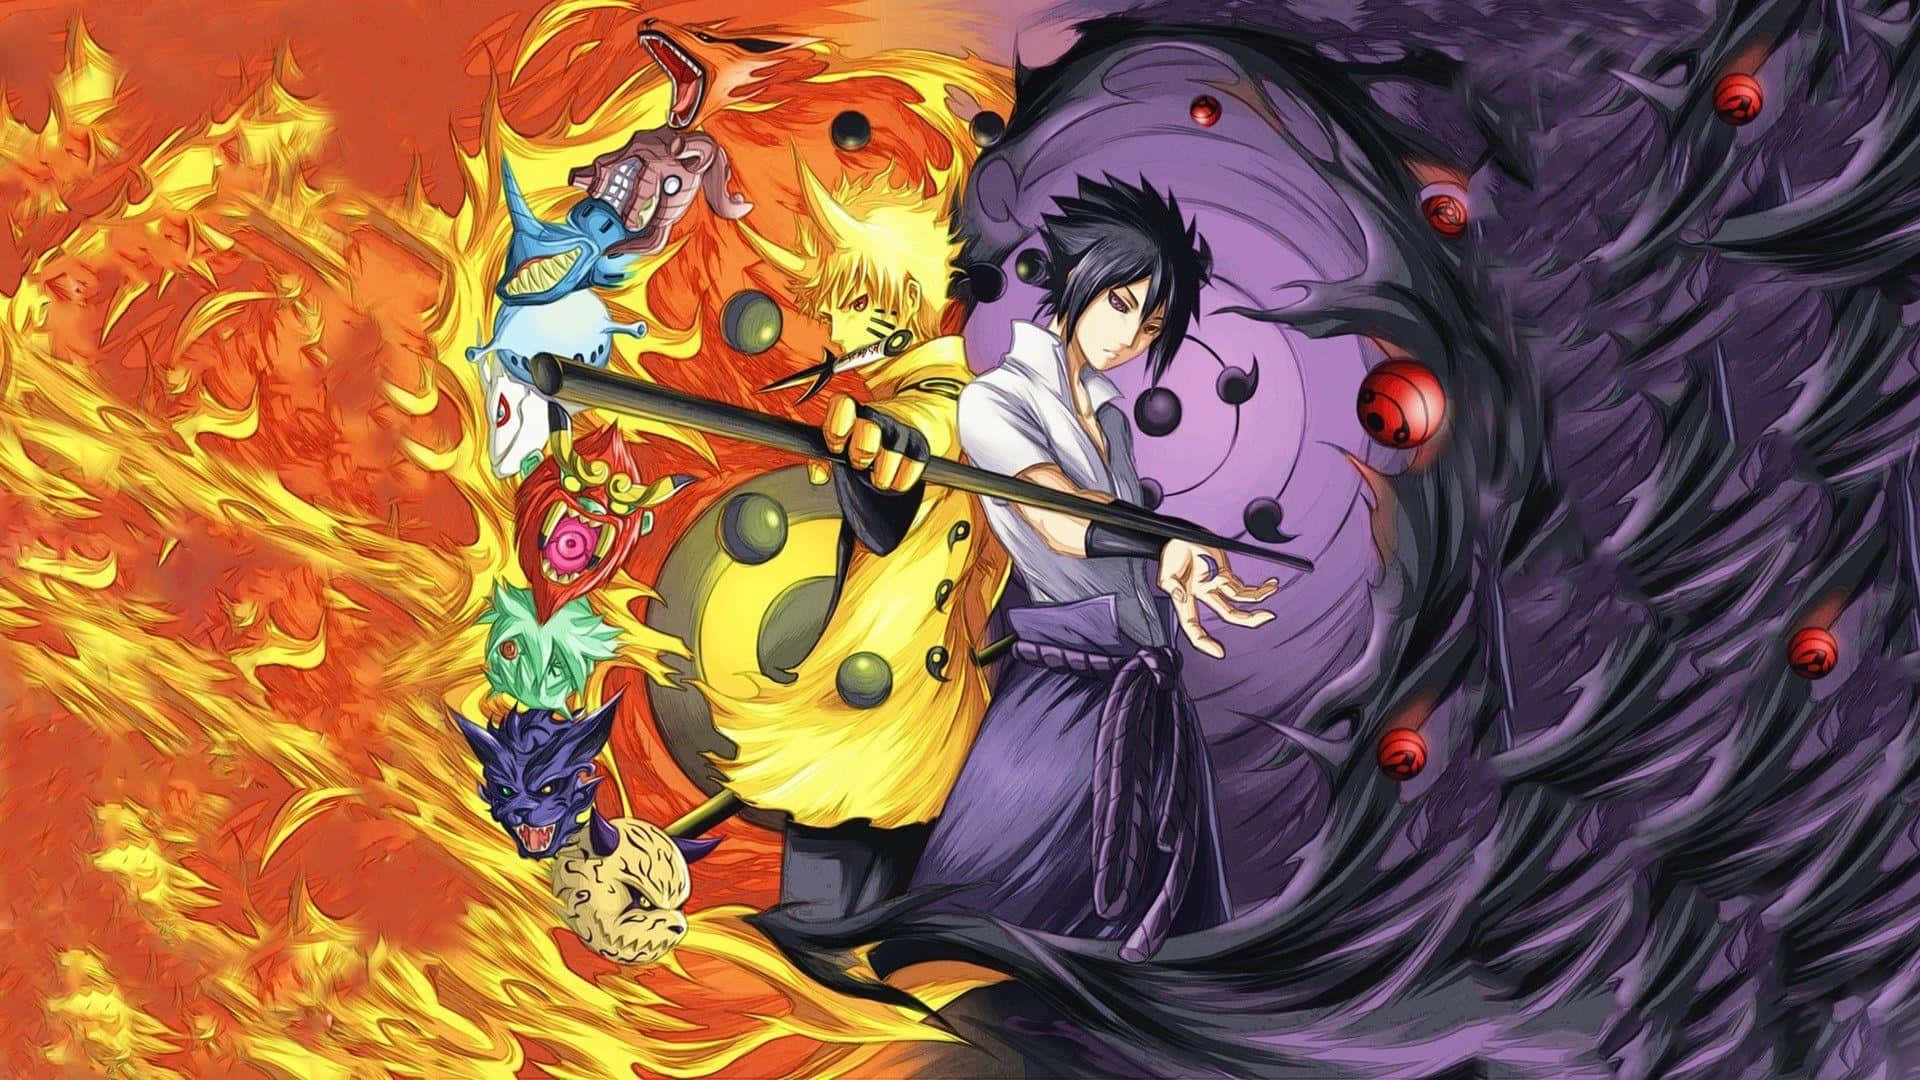 Sasuke og Naruto, længevarende rivaler og tætte venner.